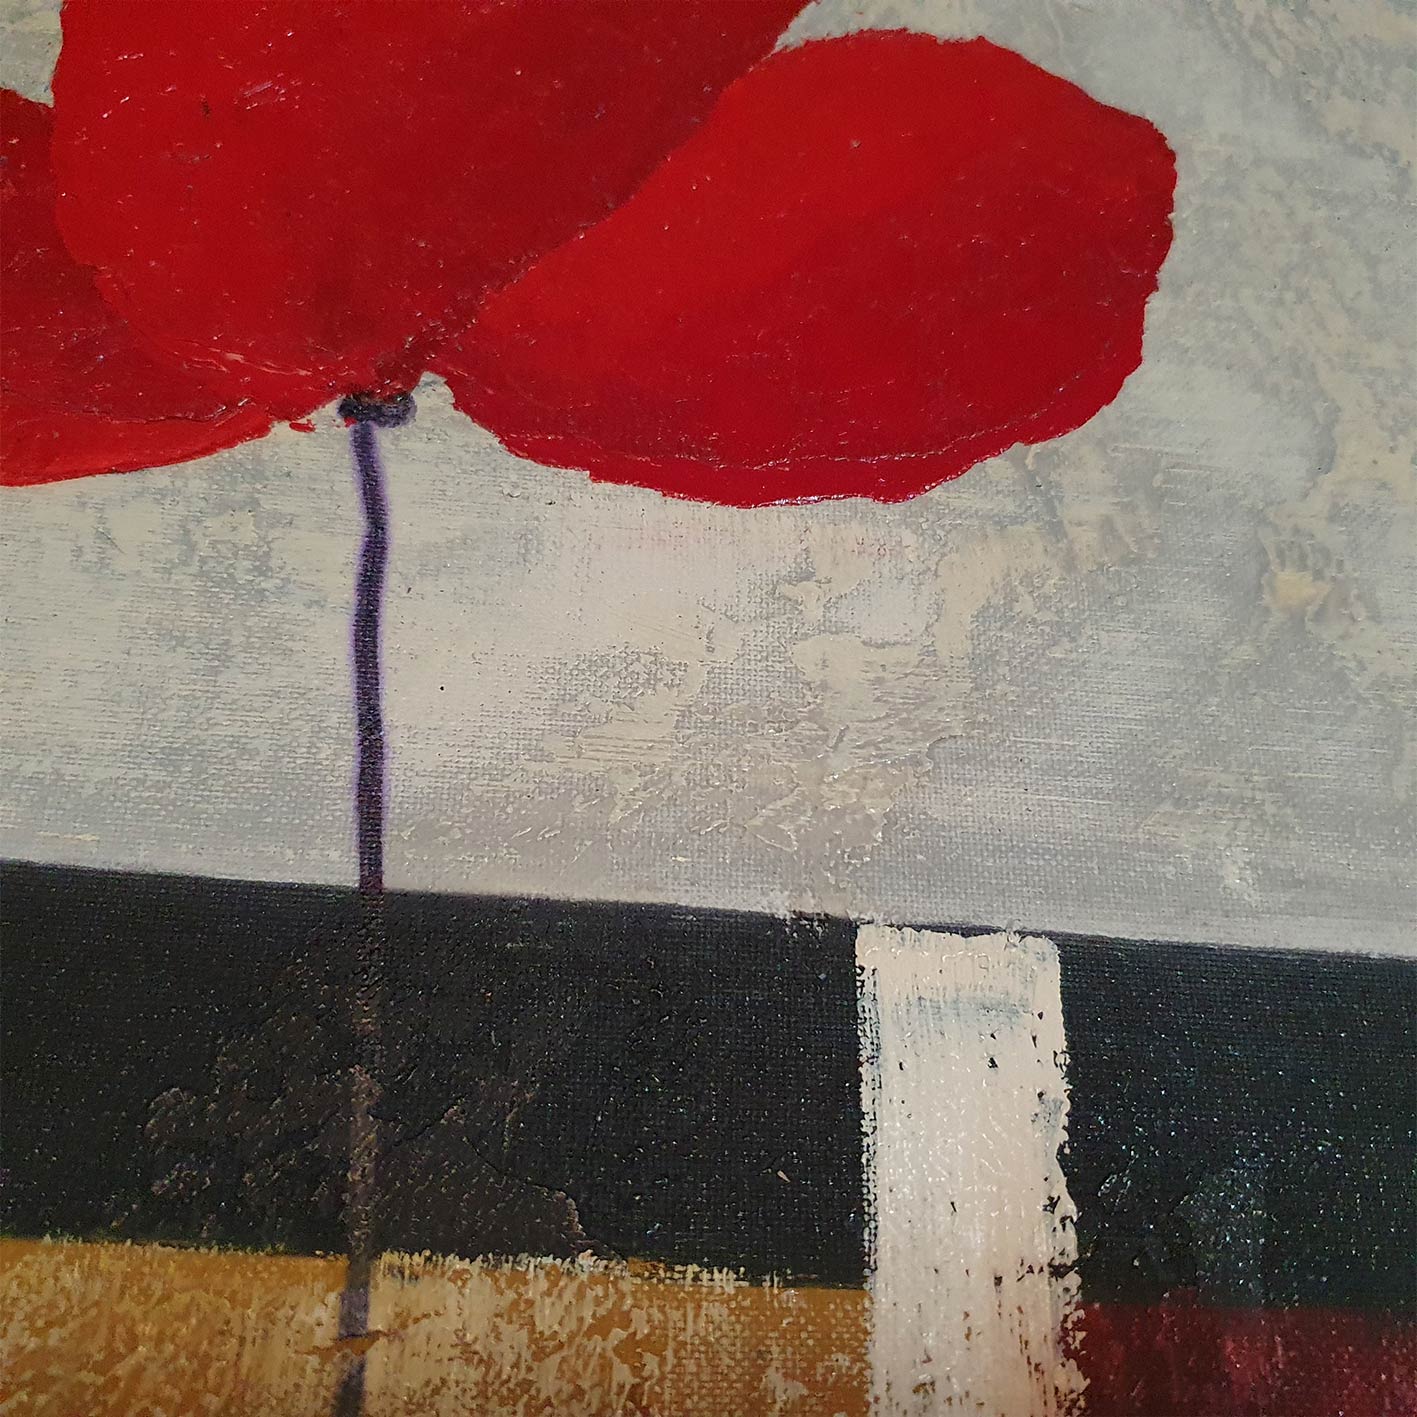 Rote Mohnblumenmalerei 80x80 cm